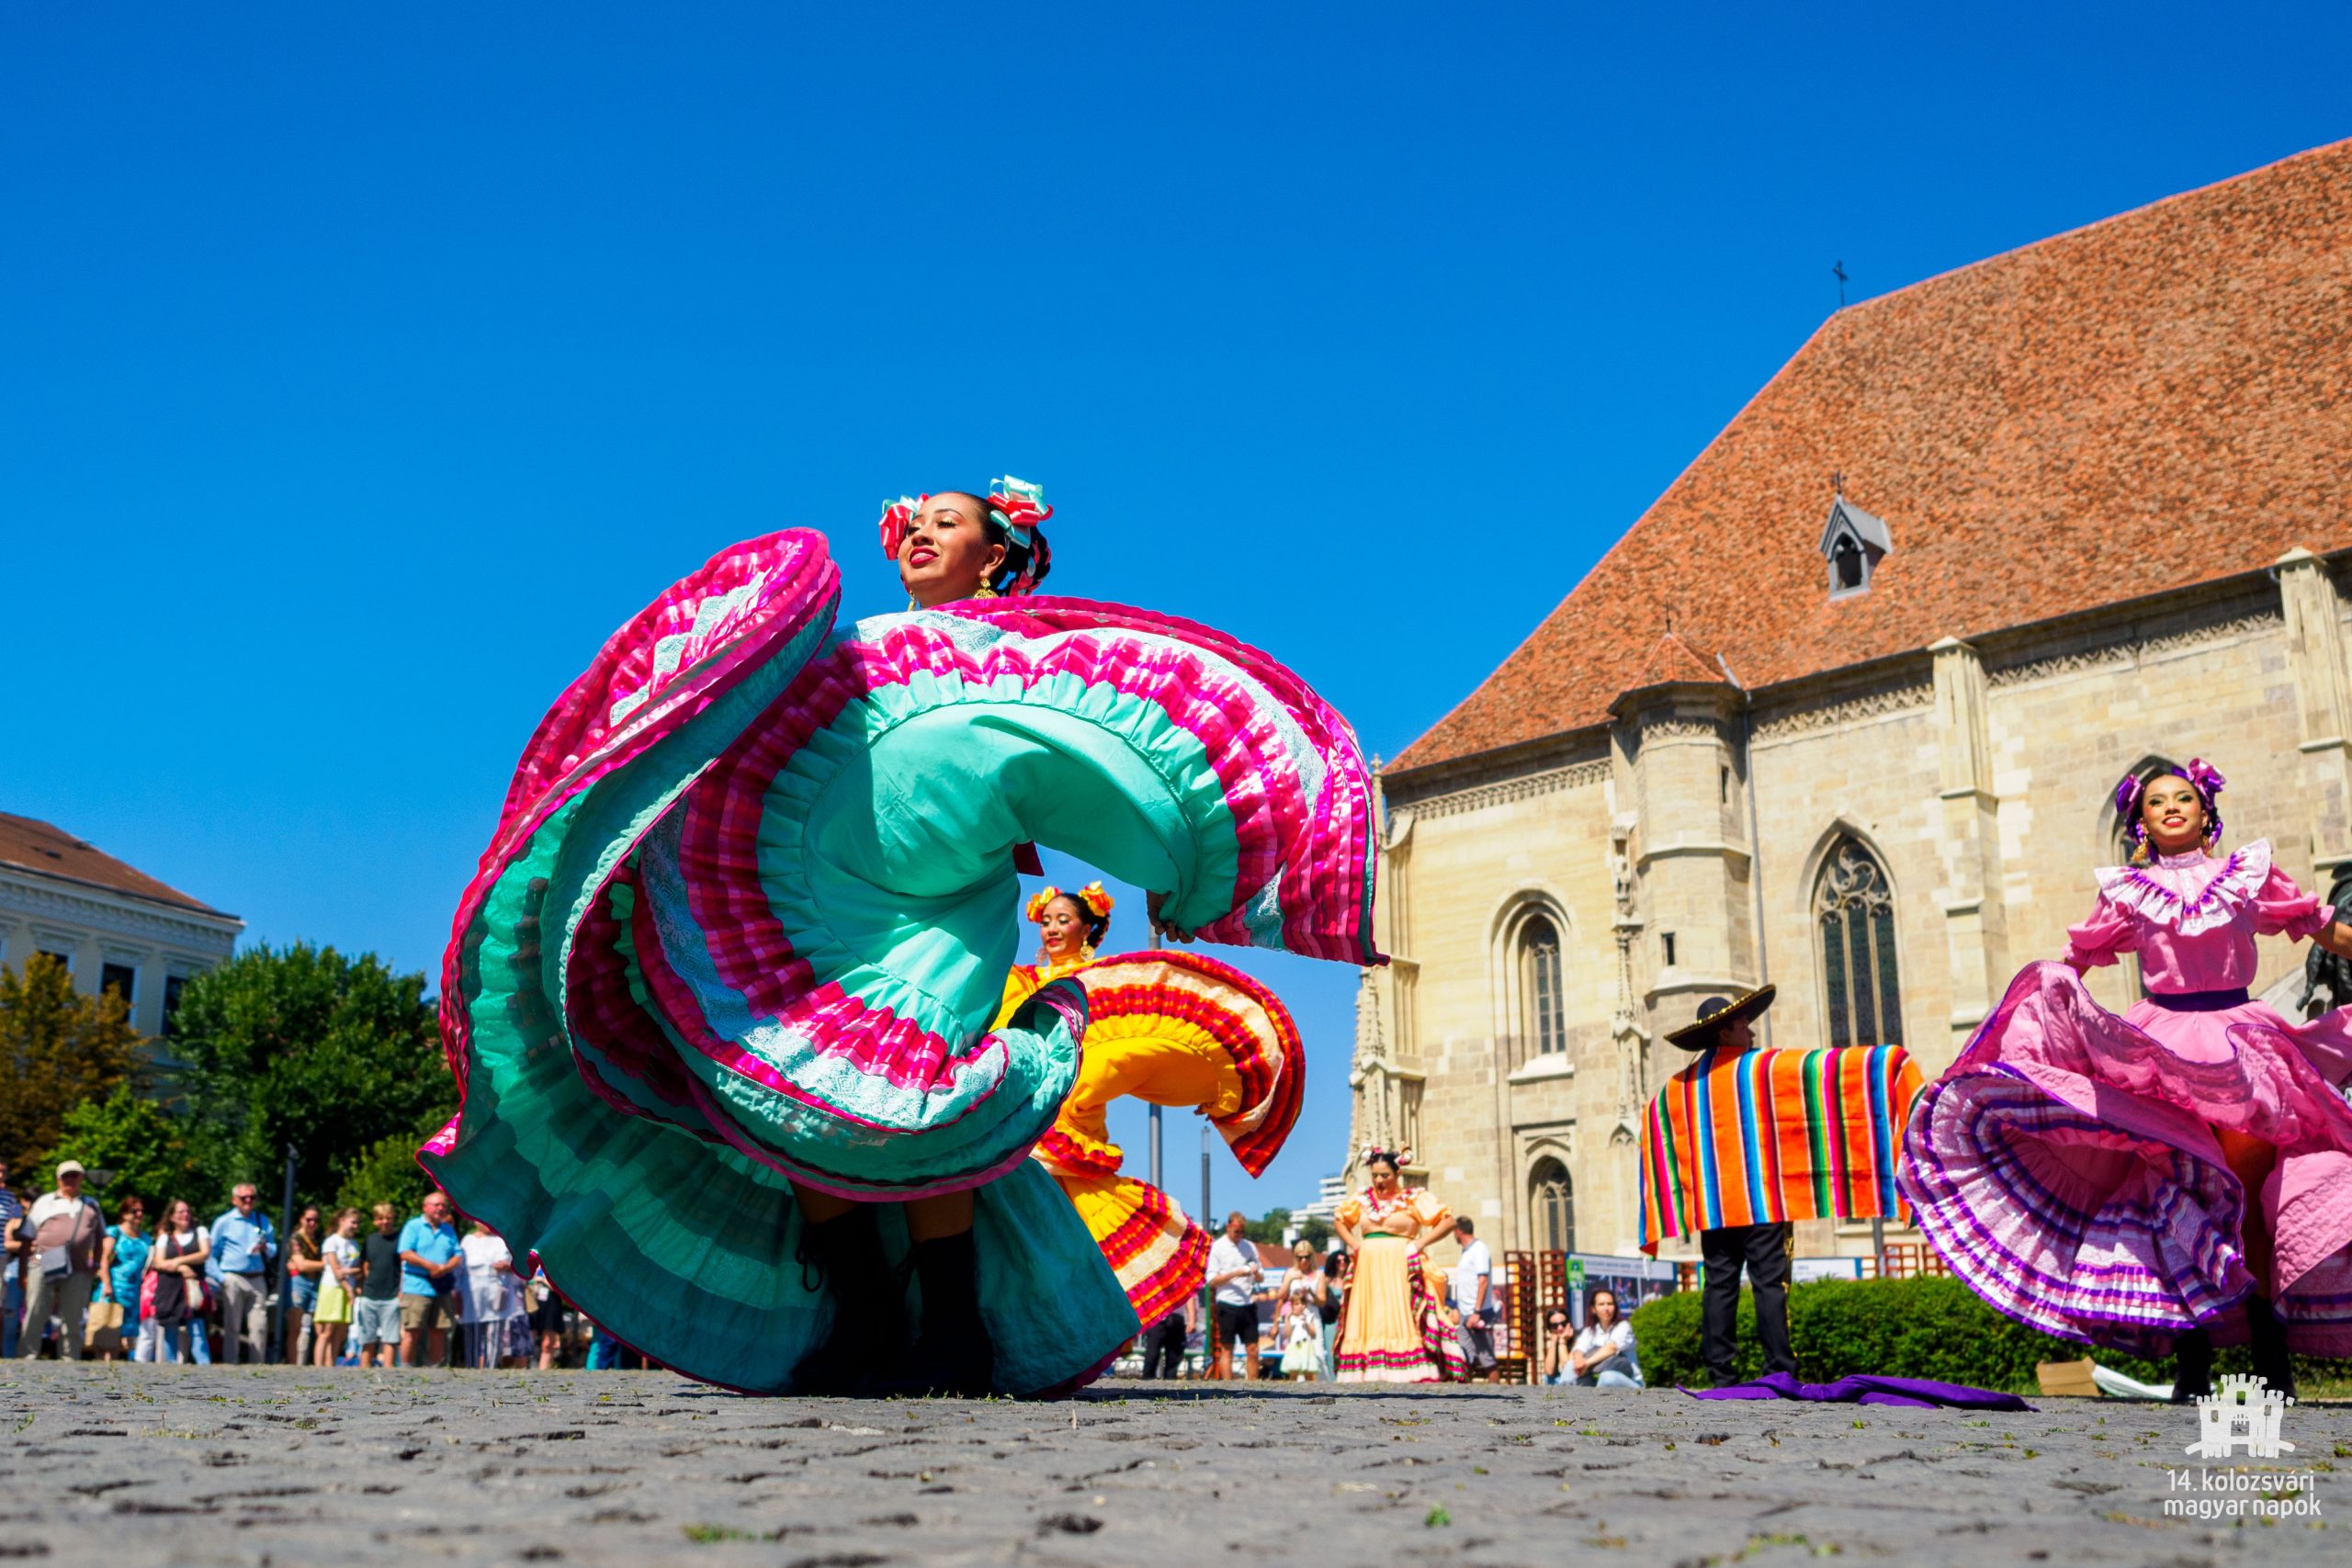 Cavalcada Internaţională a Dansului în piaţa principală a Clujului – Prezentarea ansamblurilor participante la Festivalul Internațional de Folclor „Sfântul Ștefan”, ediția XXV